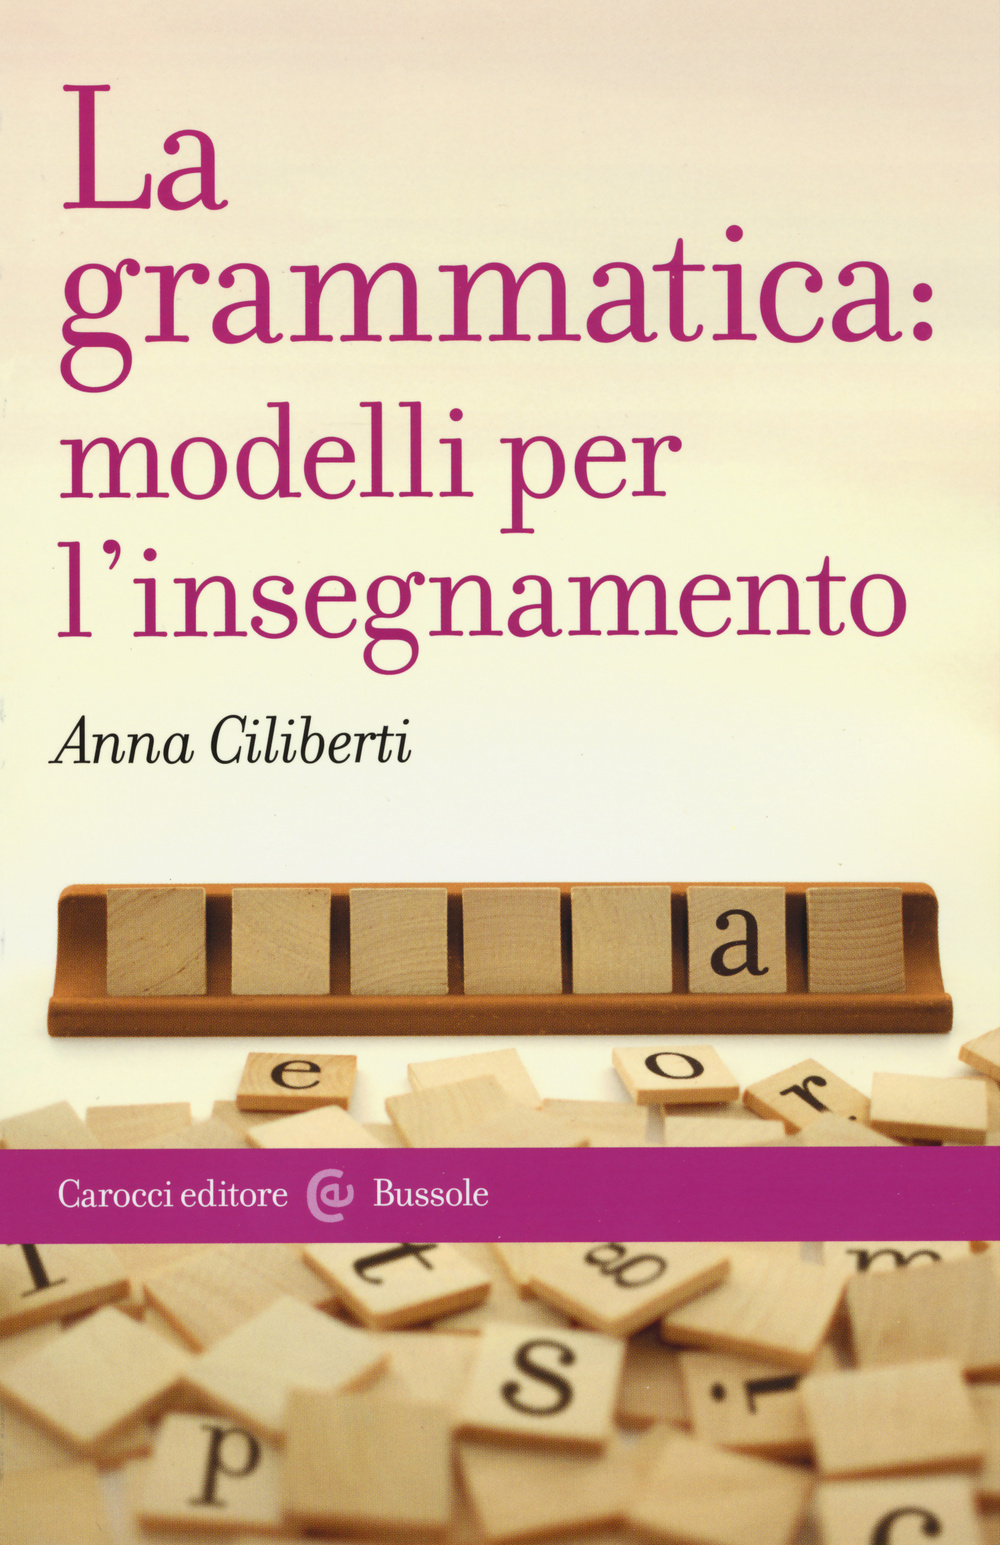 Image of La grammatica: modelli per l'insegnamento